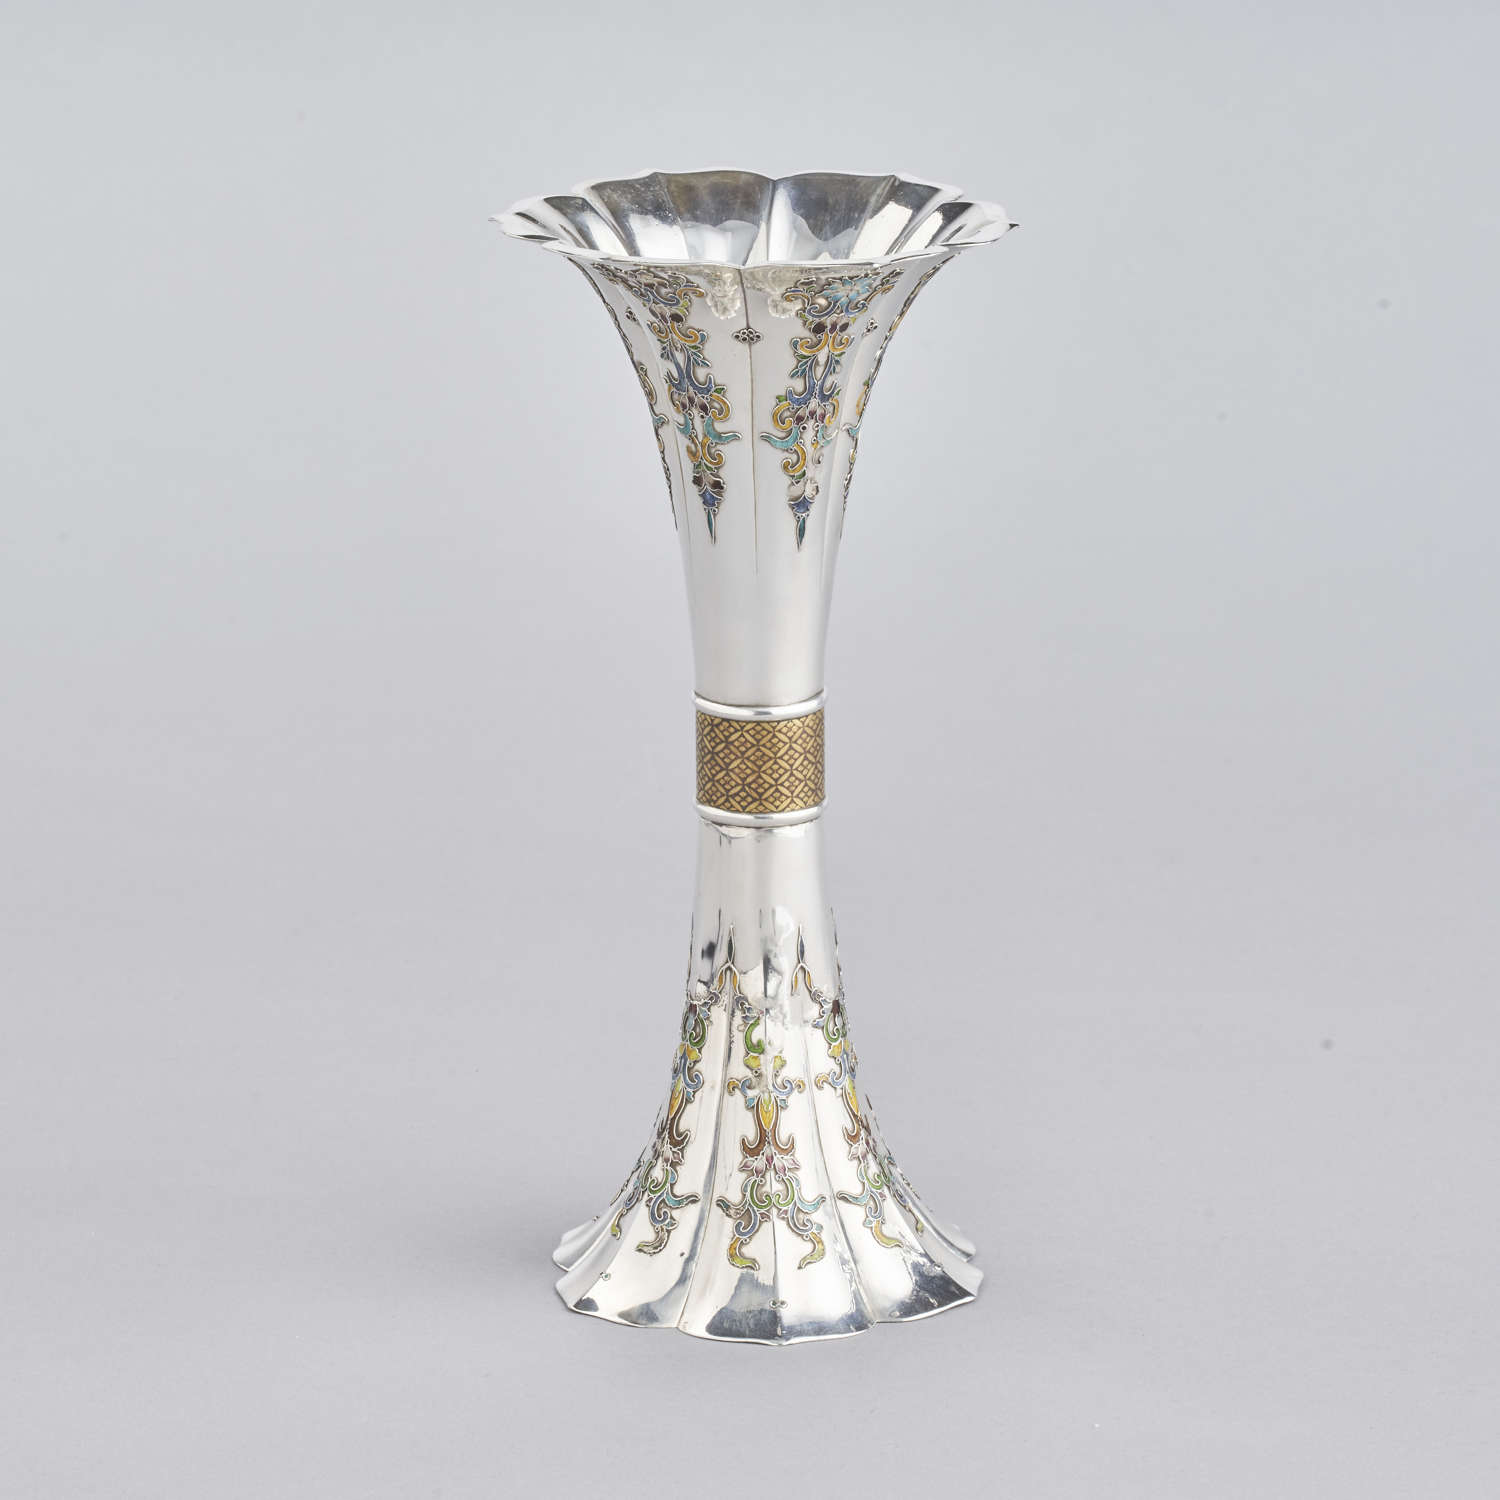 Japanese silver vase signed Yushin Meiji period